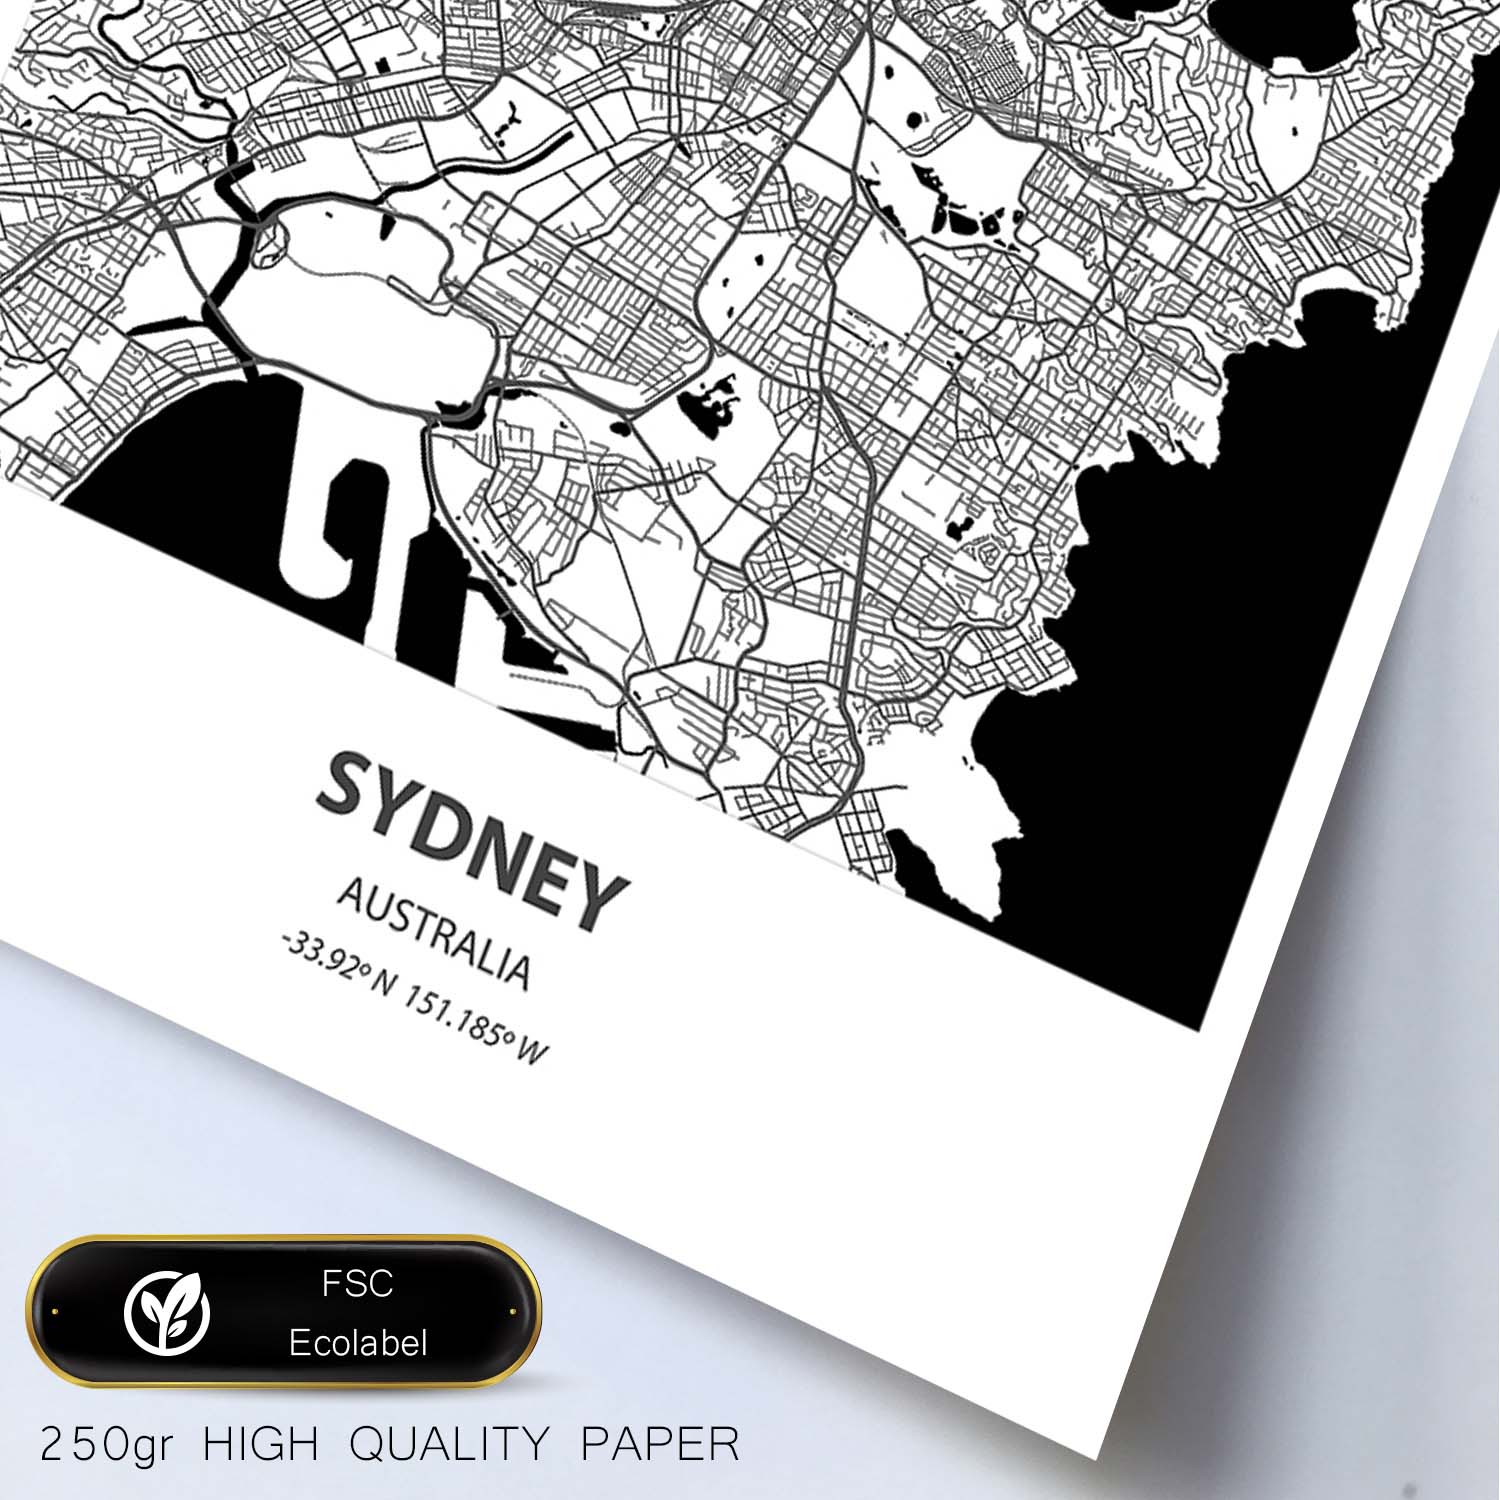 Poster con mapa de Sydney - Australia. Láminas de ciudades de Australia con mares y ríos en color negro.-Artwork-Nacnic-Nacnic Estudio SL